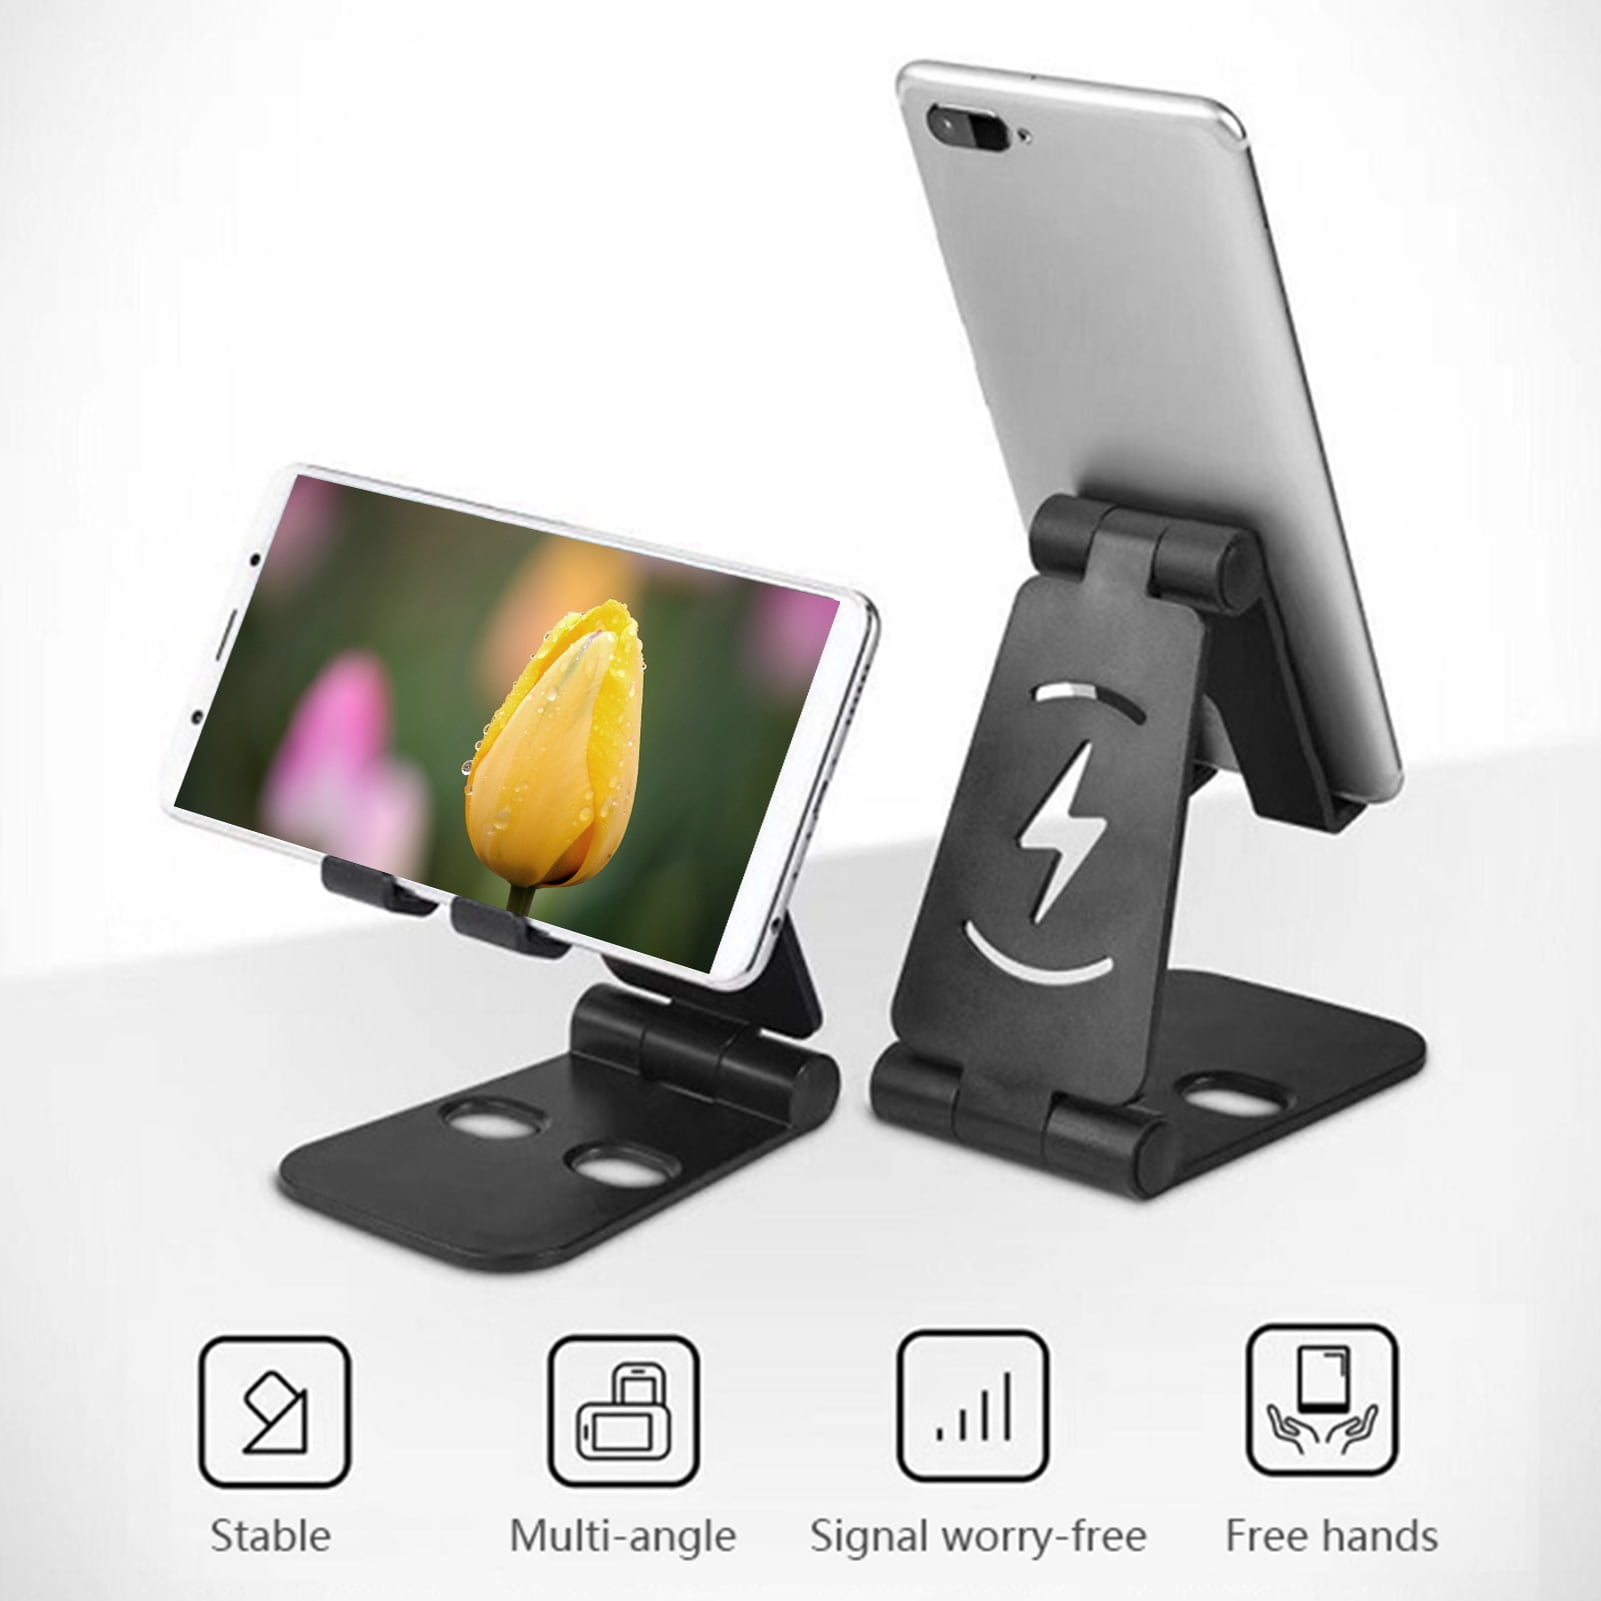 Details about   Universal Adjustable Foldable Cell Phone Tablet Desktop Desk Stand Mount Holder